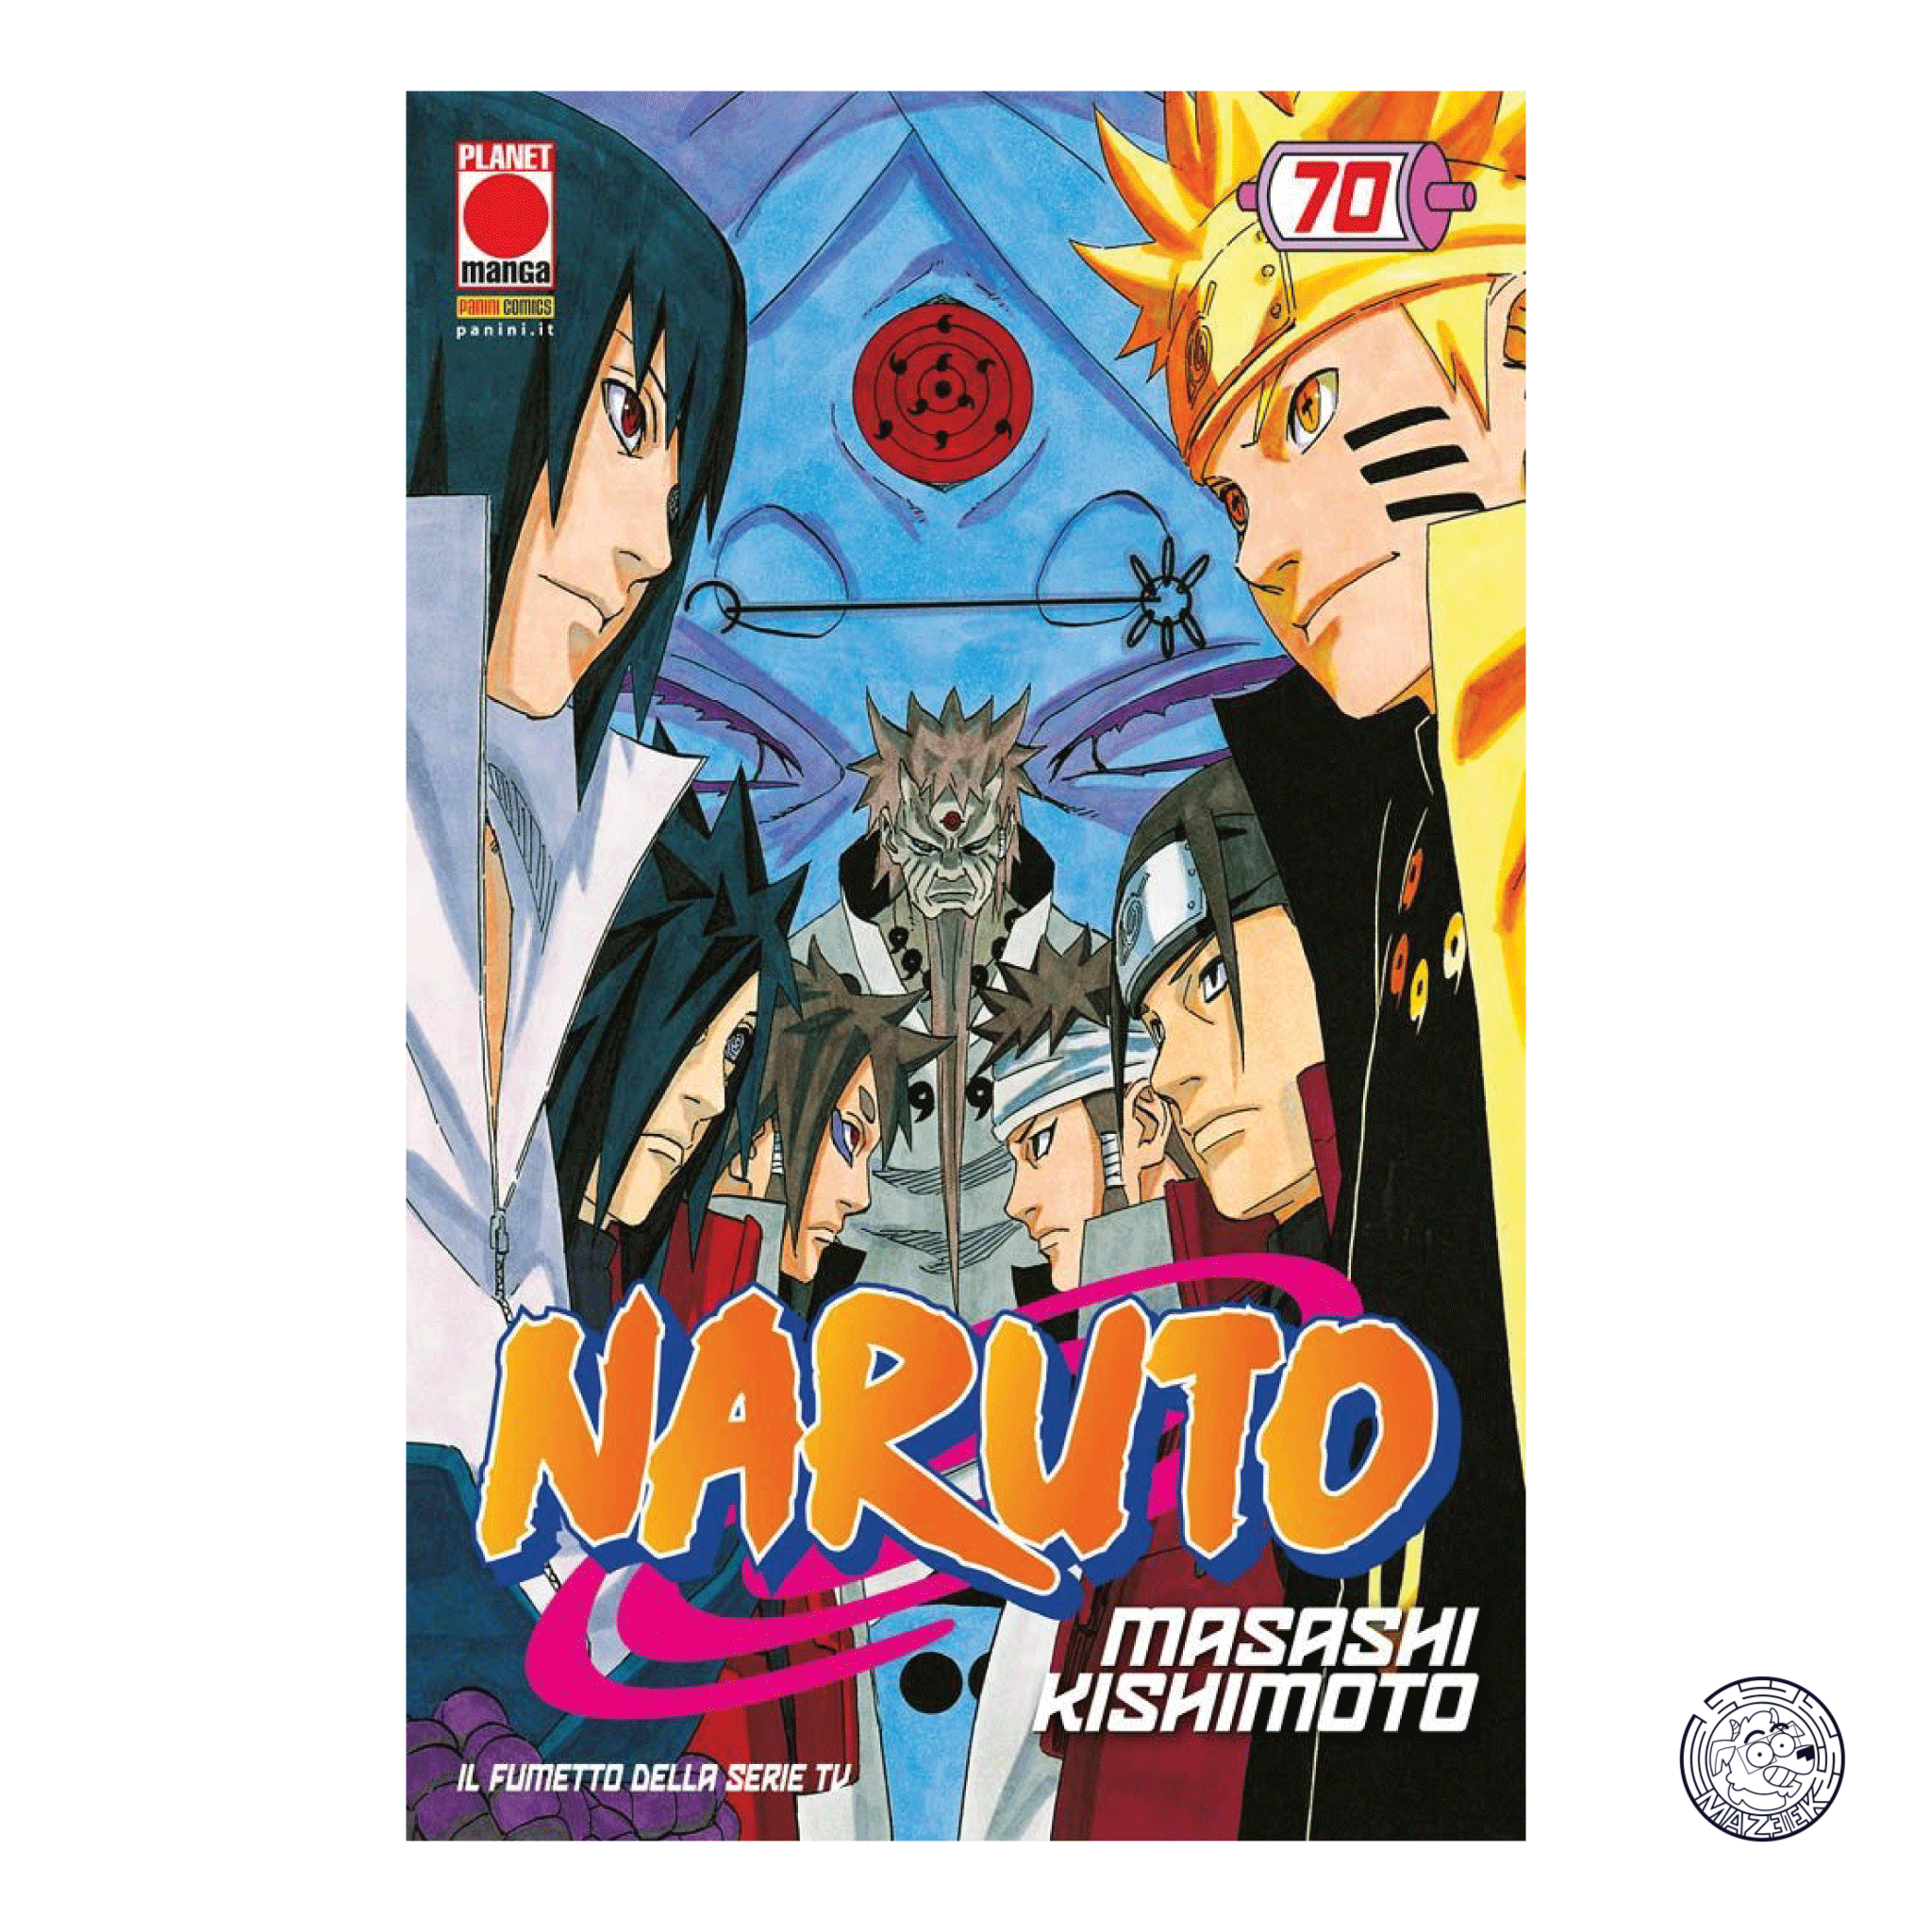 Naruto The Myth 70 – Reprint 2